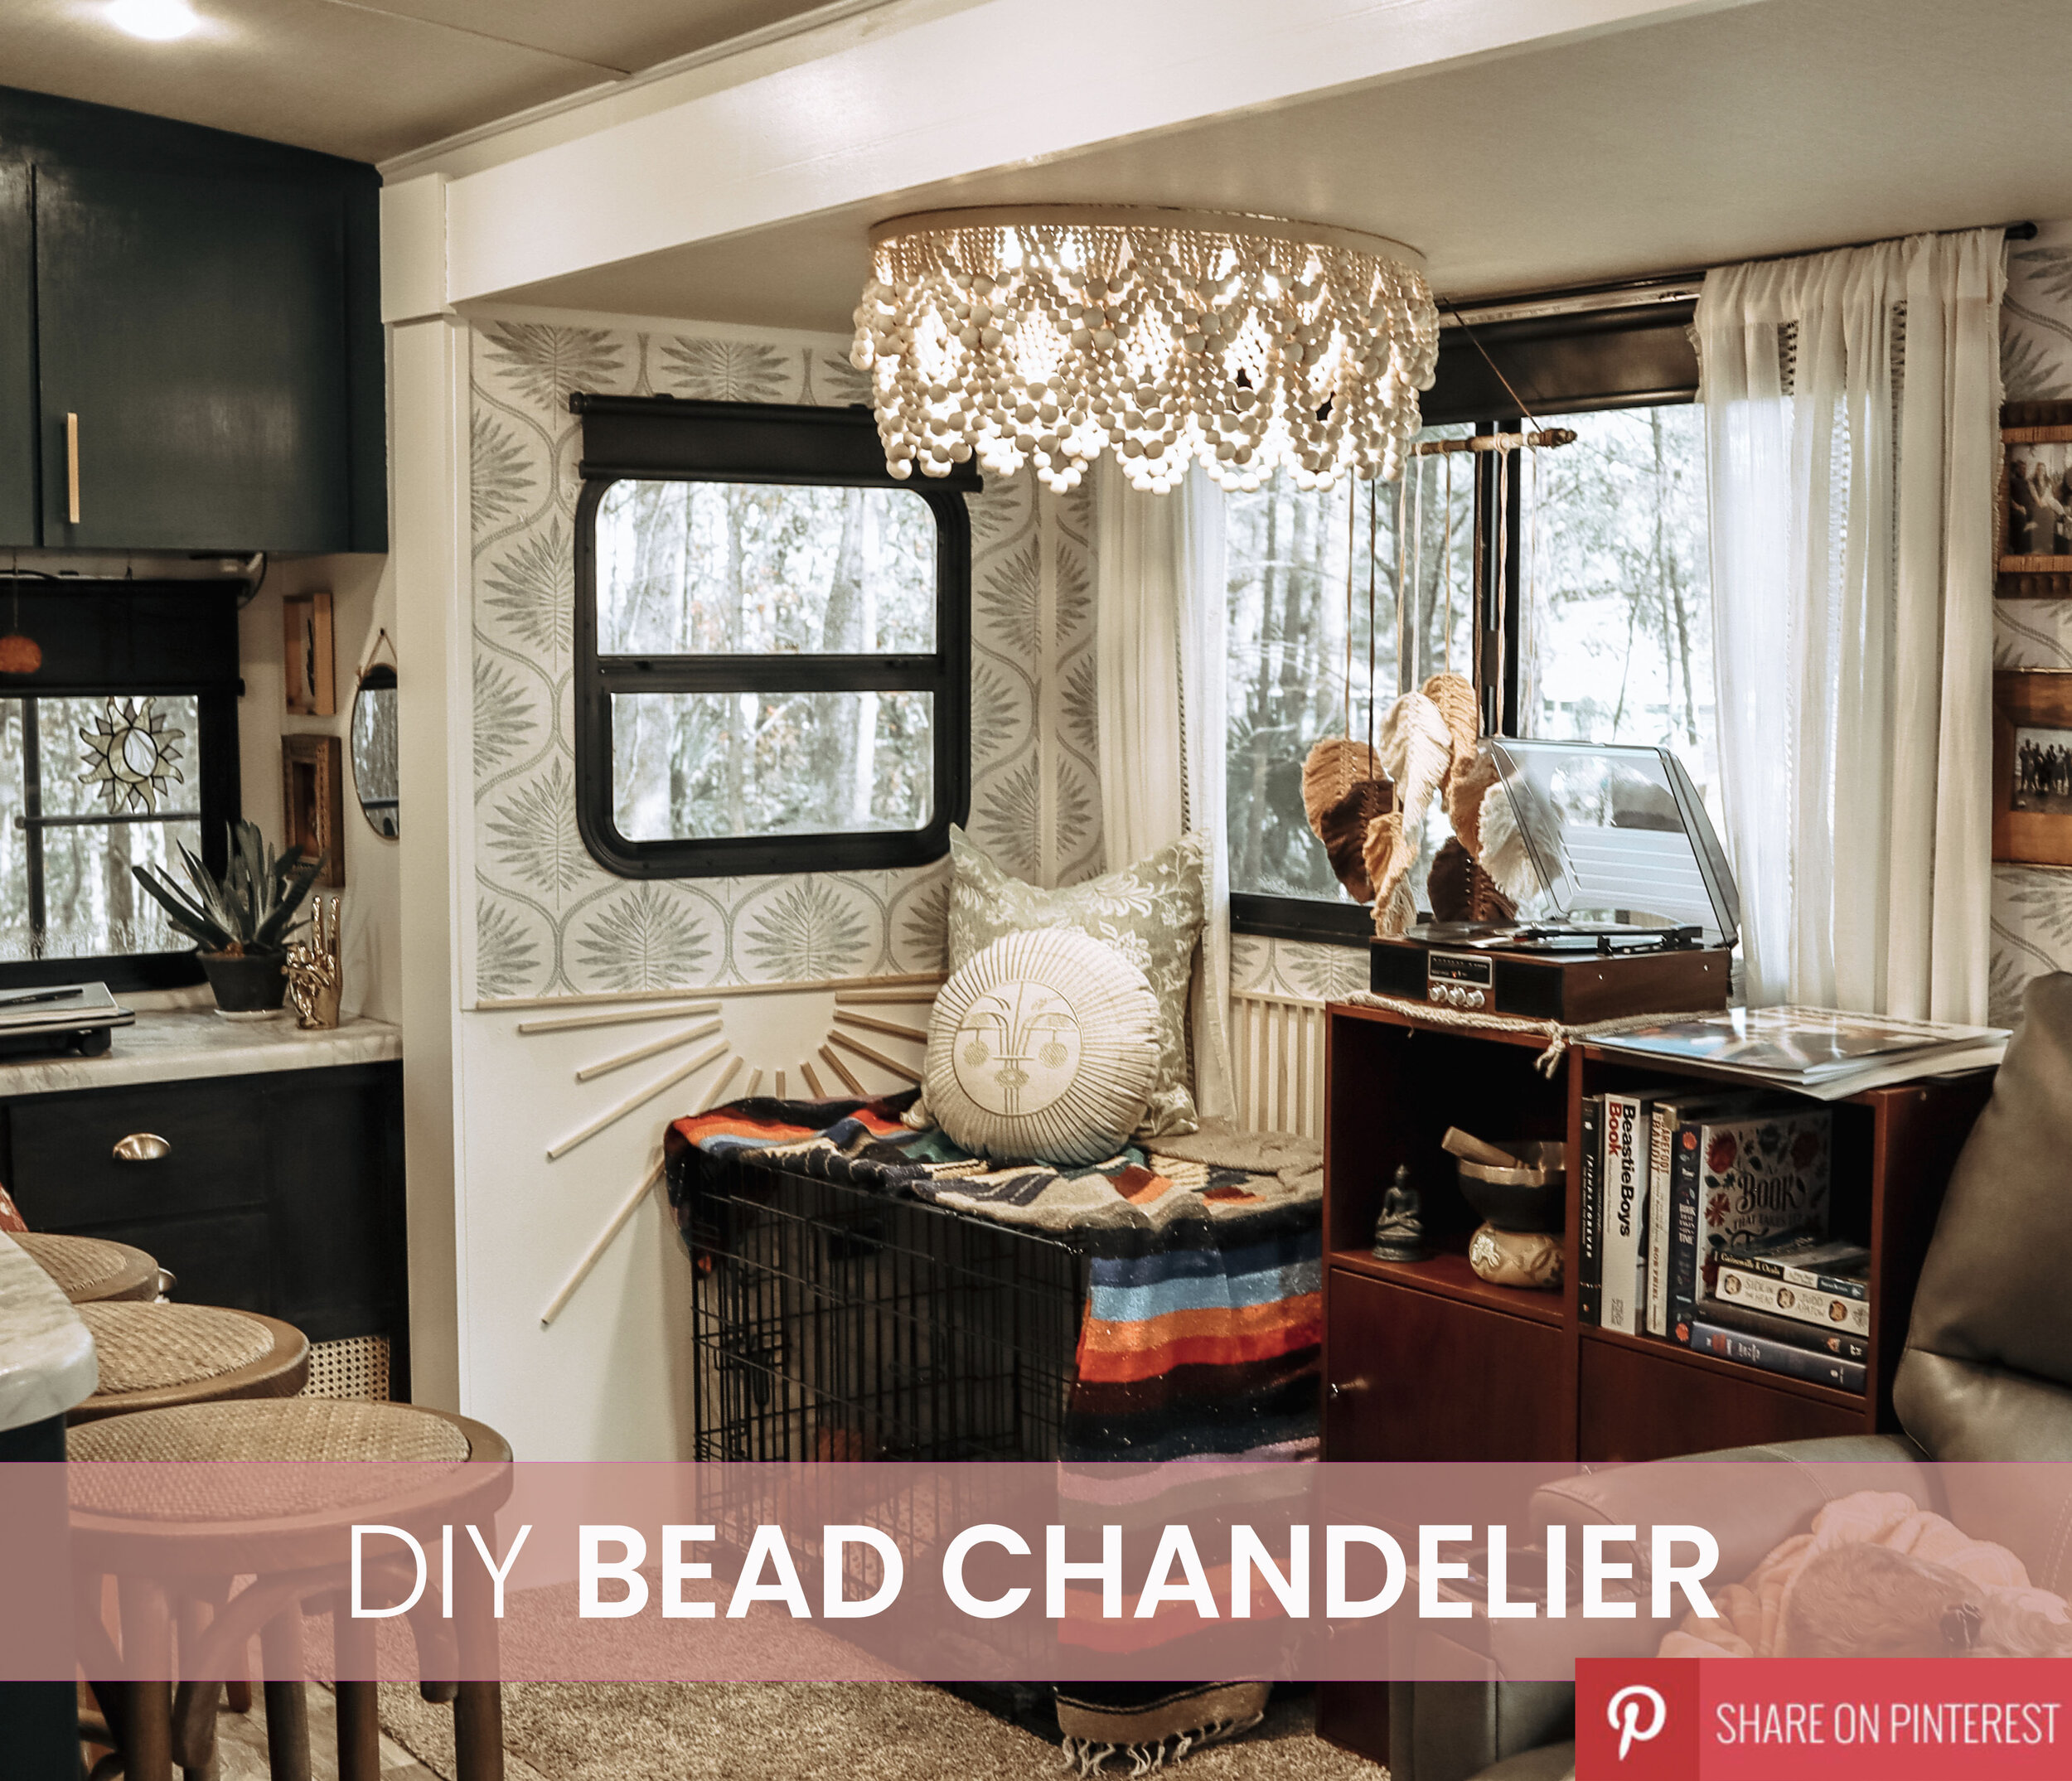 DIY Bead Chandelier on Pinterest RV Living.jpg